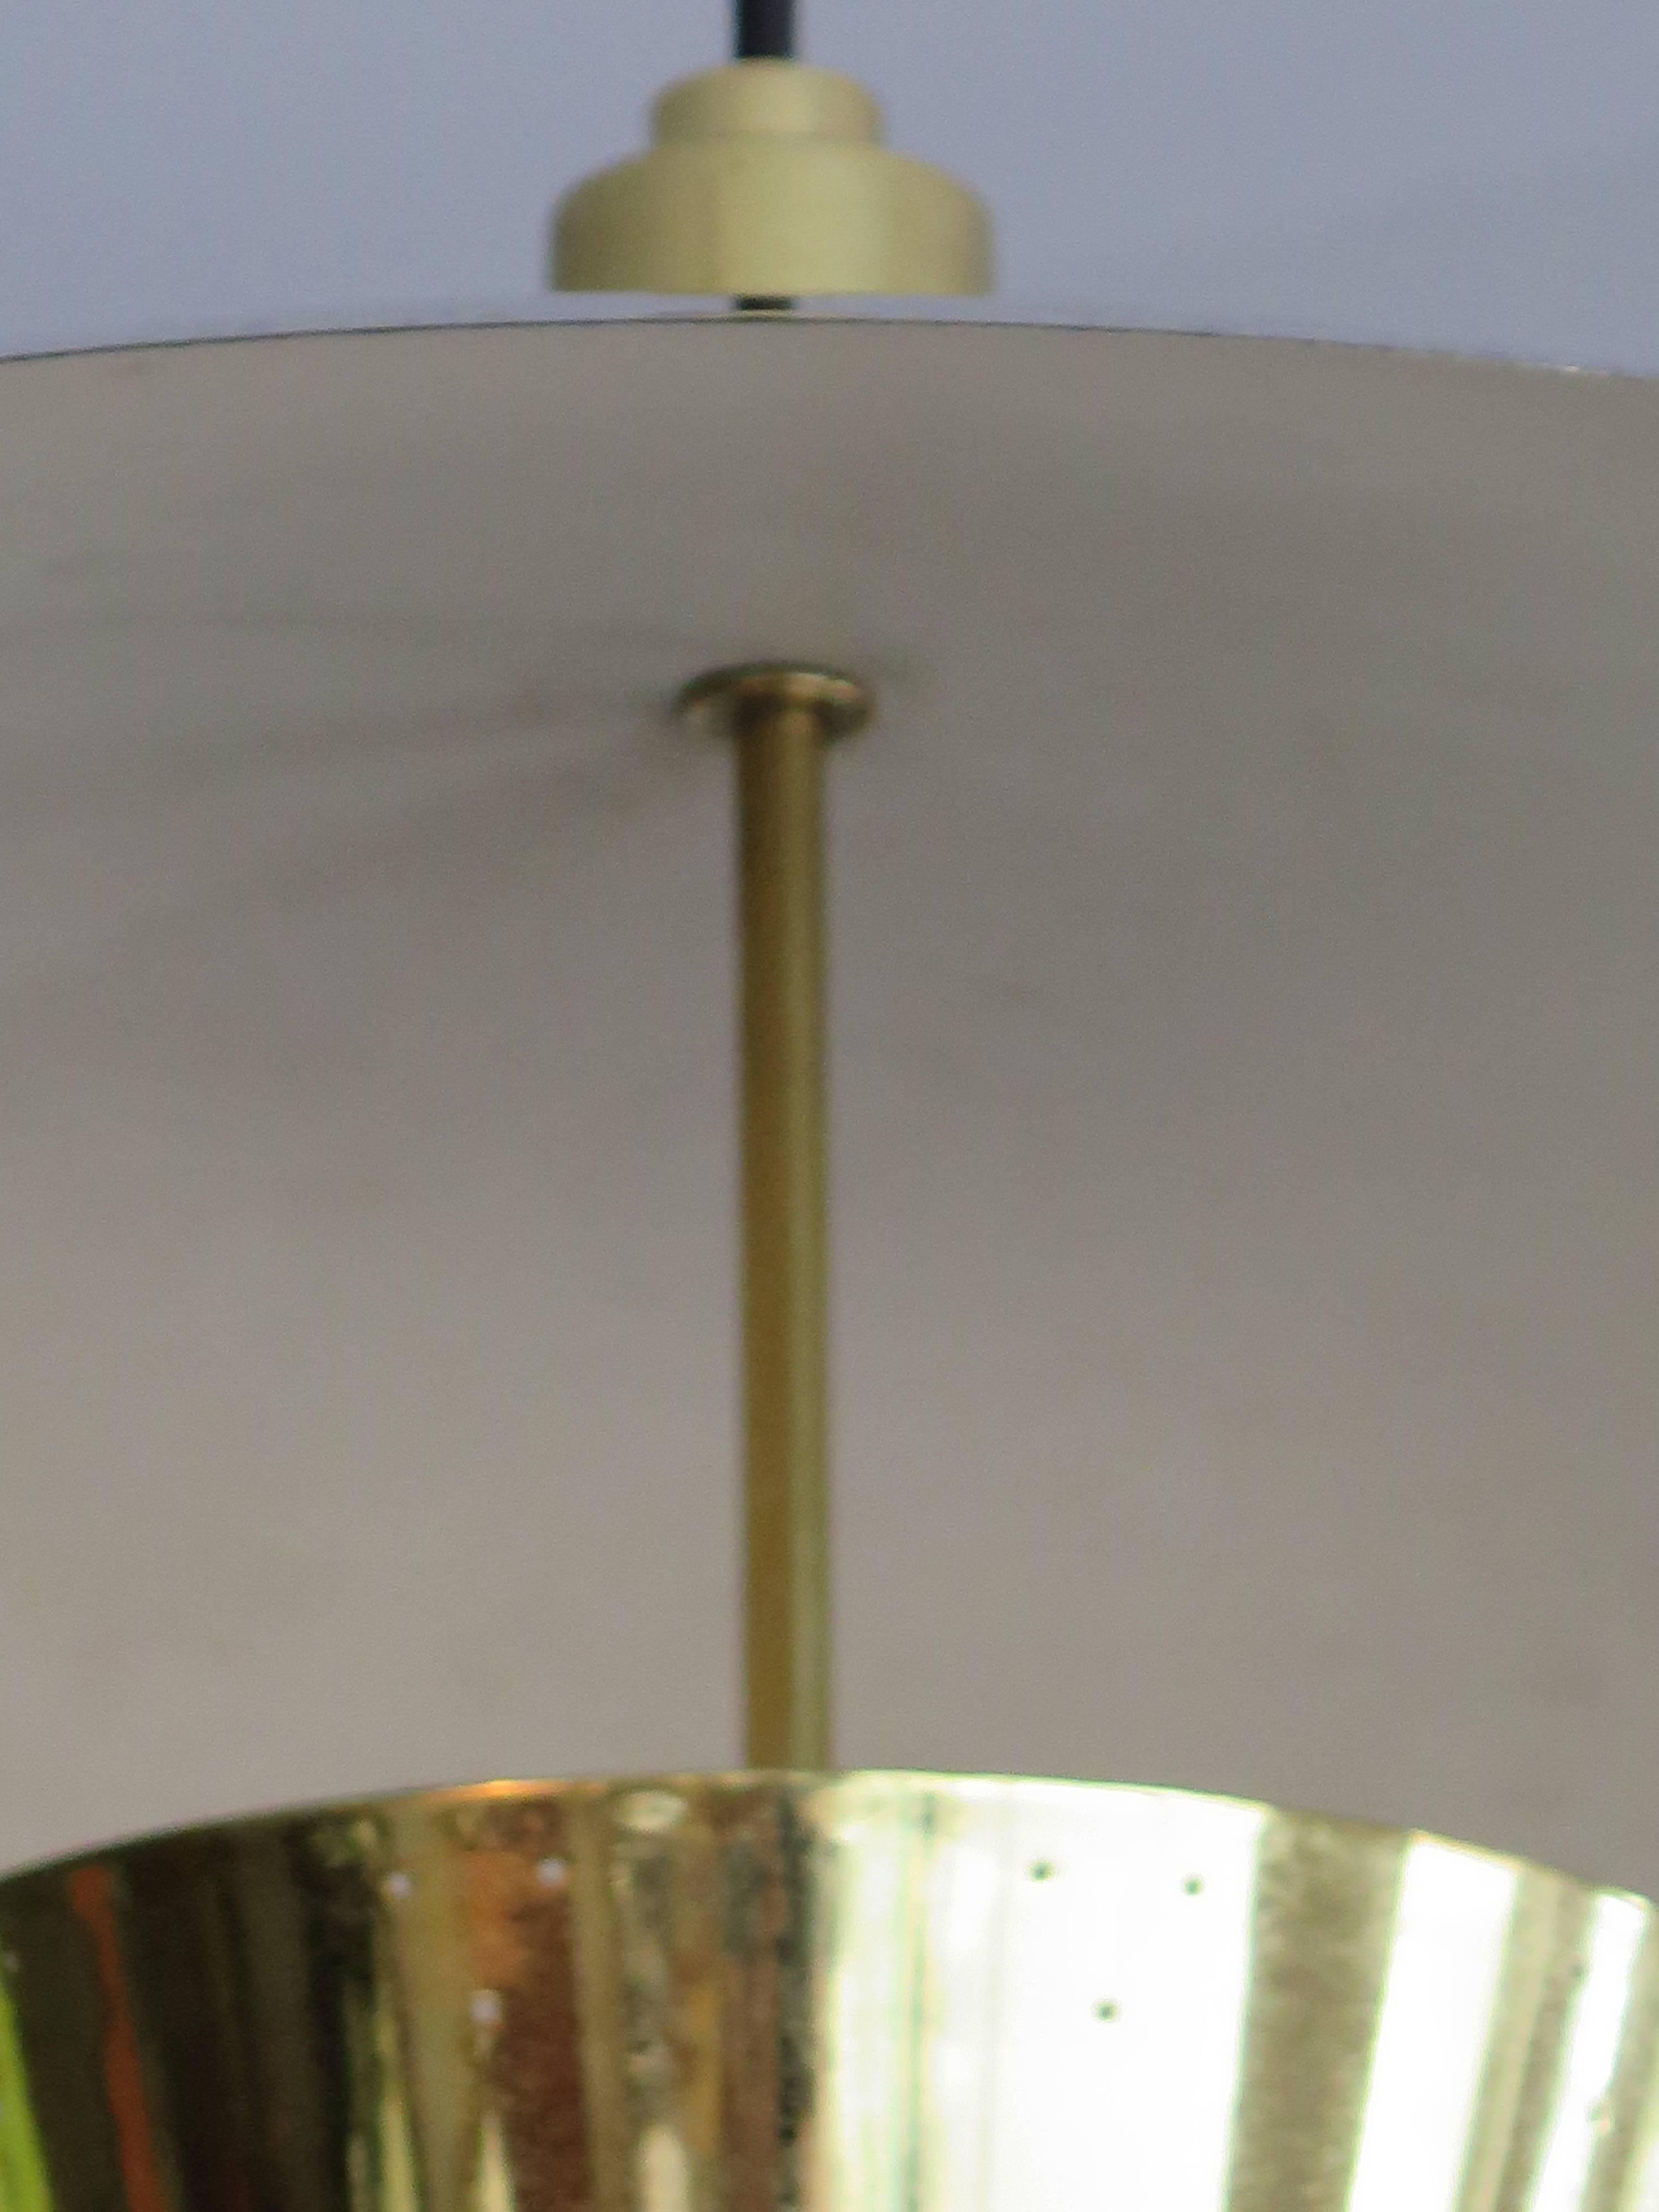 Eine ungewöhnliche Pendelleuchte aus poliertem Messing, die Harry Gitlin für Ledlin Lighting Inc. zugeschrieben wird.  Der Messingring erleichtert die Funktion und ist zudem sehr dekorativ. Perforierter Farbton.  